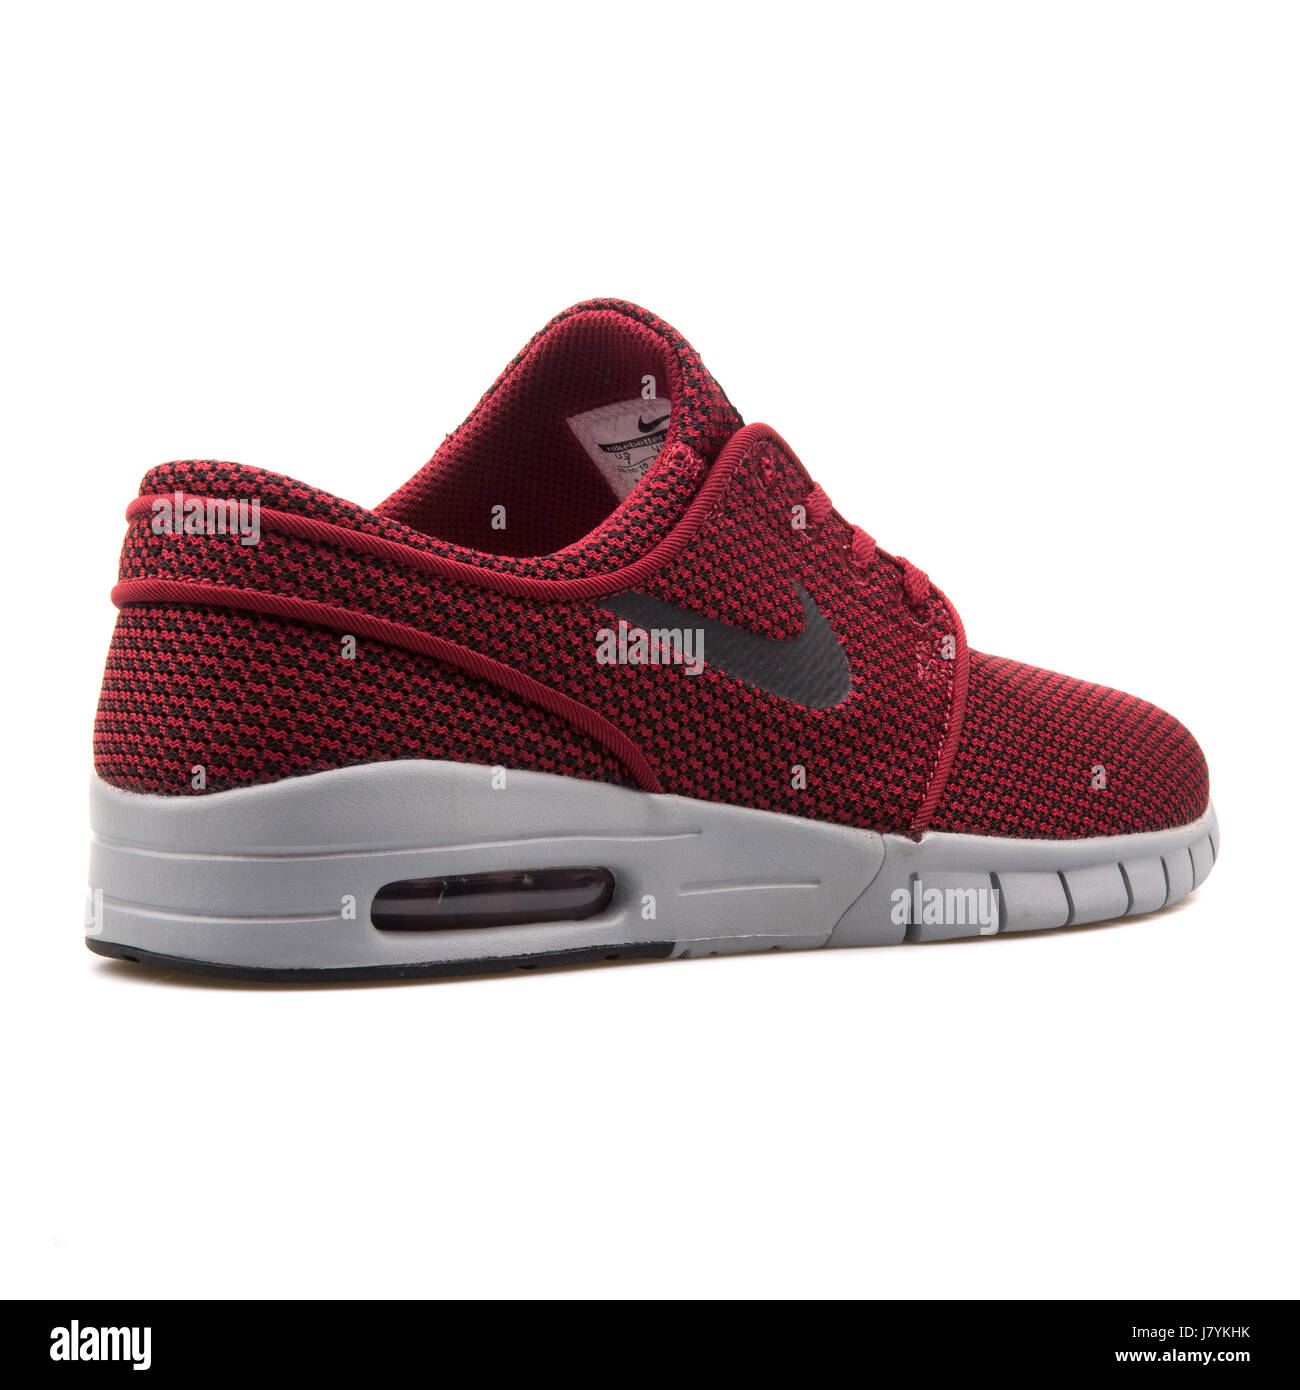 tema leopardo Maldito Nike Stefan Janoski Max Men's Red Black Skateboarding Sneakers - 631303-601  Stock Photo - Alamy